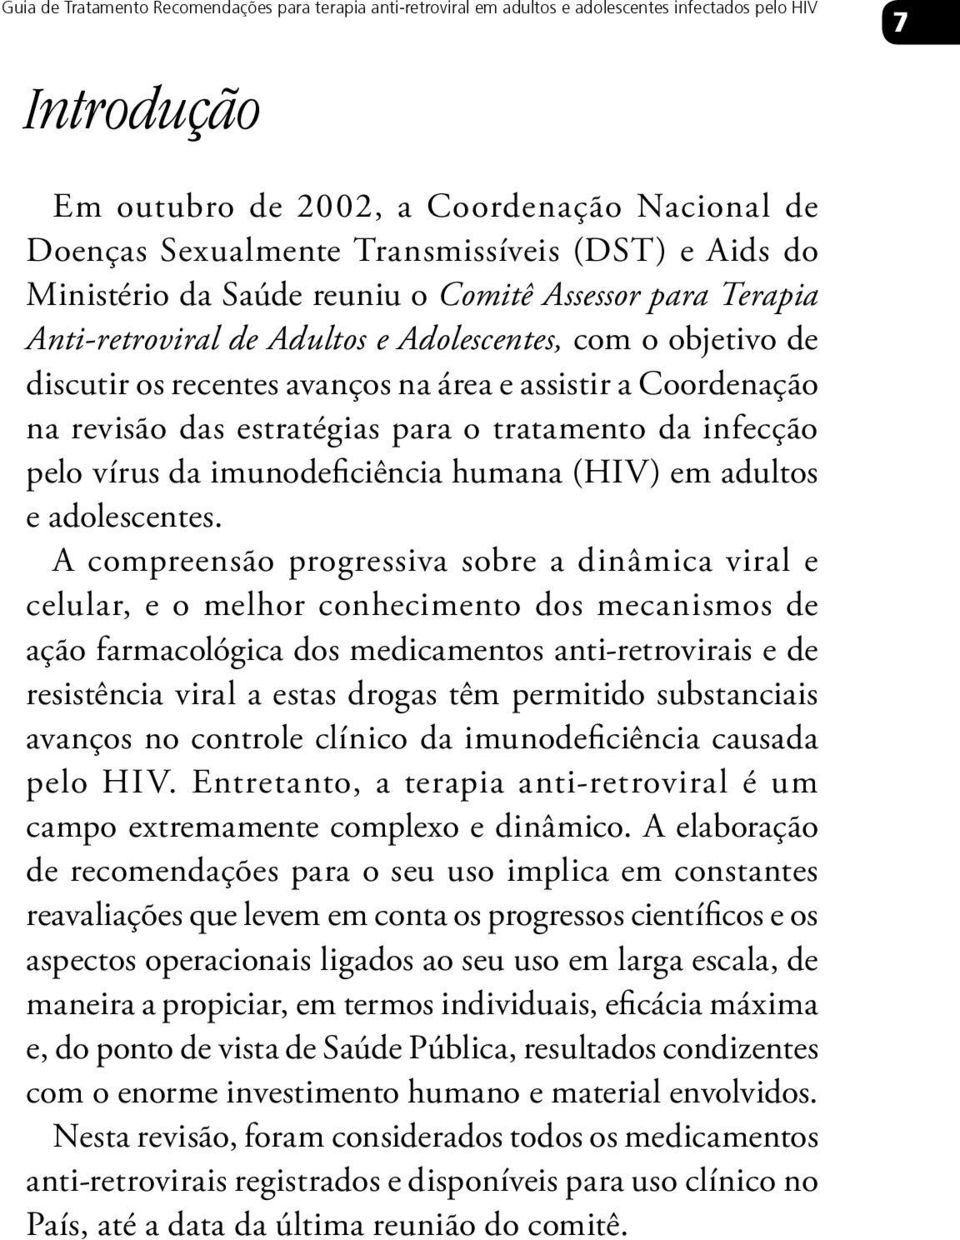 Coordenação na revisão das estratégias para o tratamento da infecção pelo vírus da imunodeficiência humana (HIV) em adultos e adolescentes.